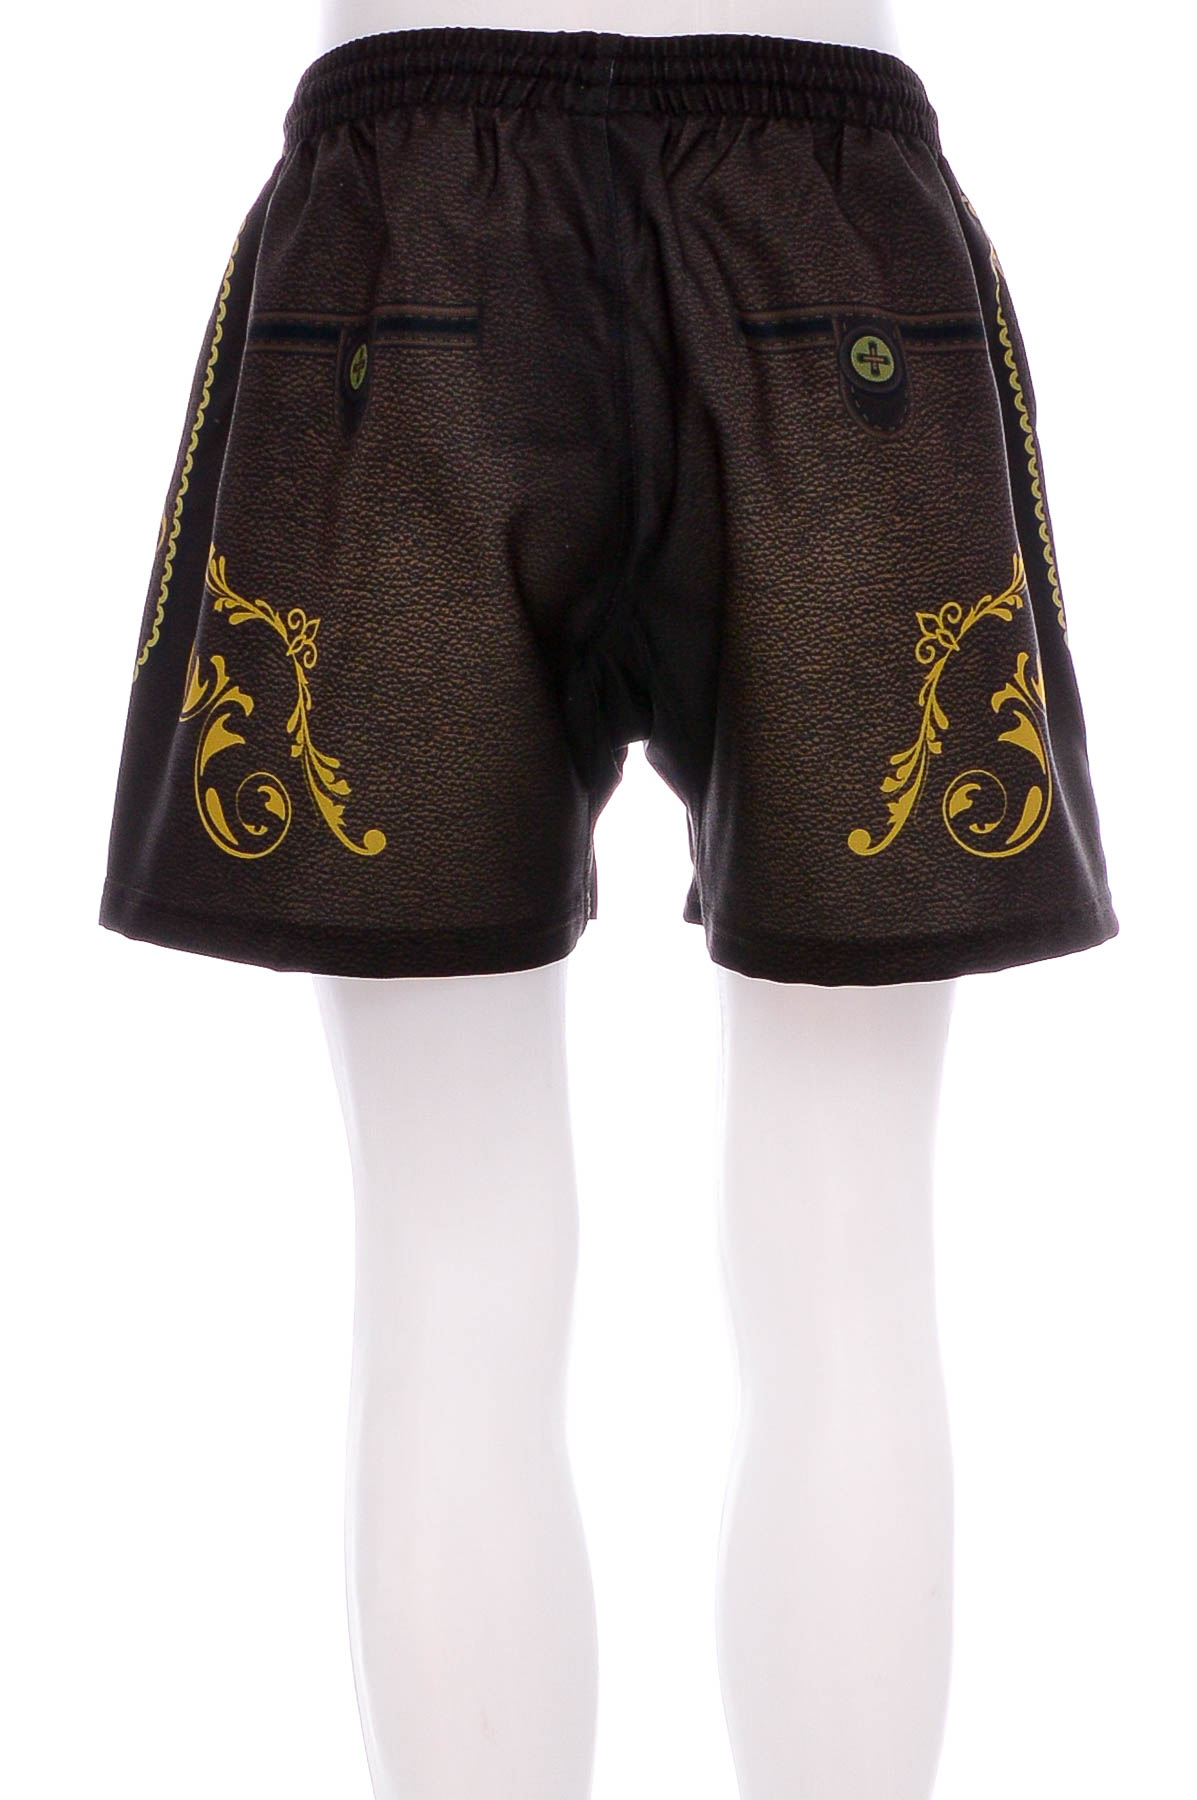 Female shorts - VX3 - 1